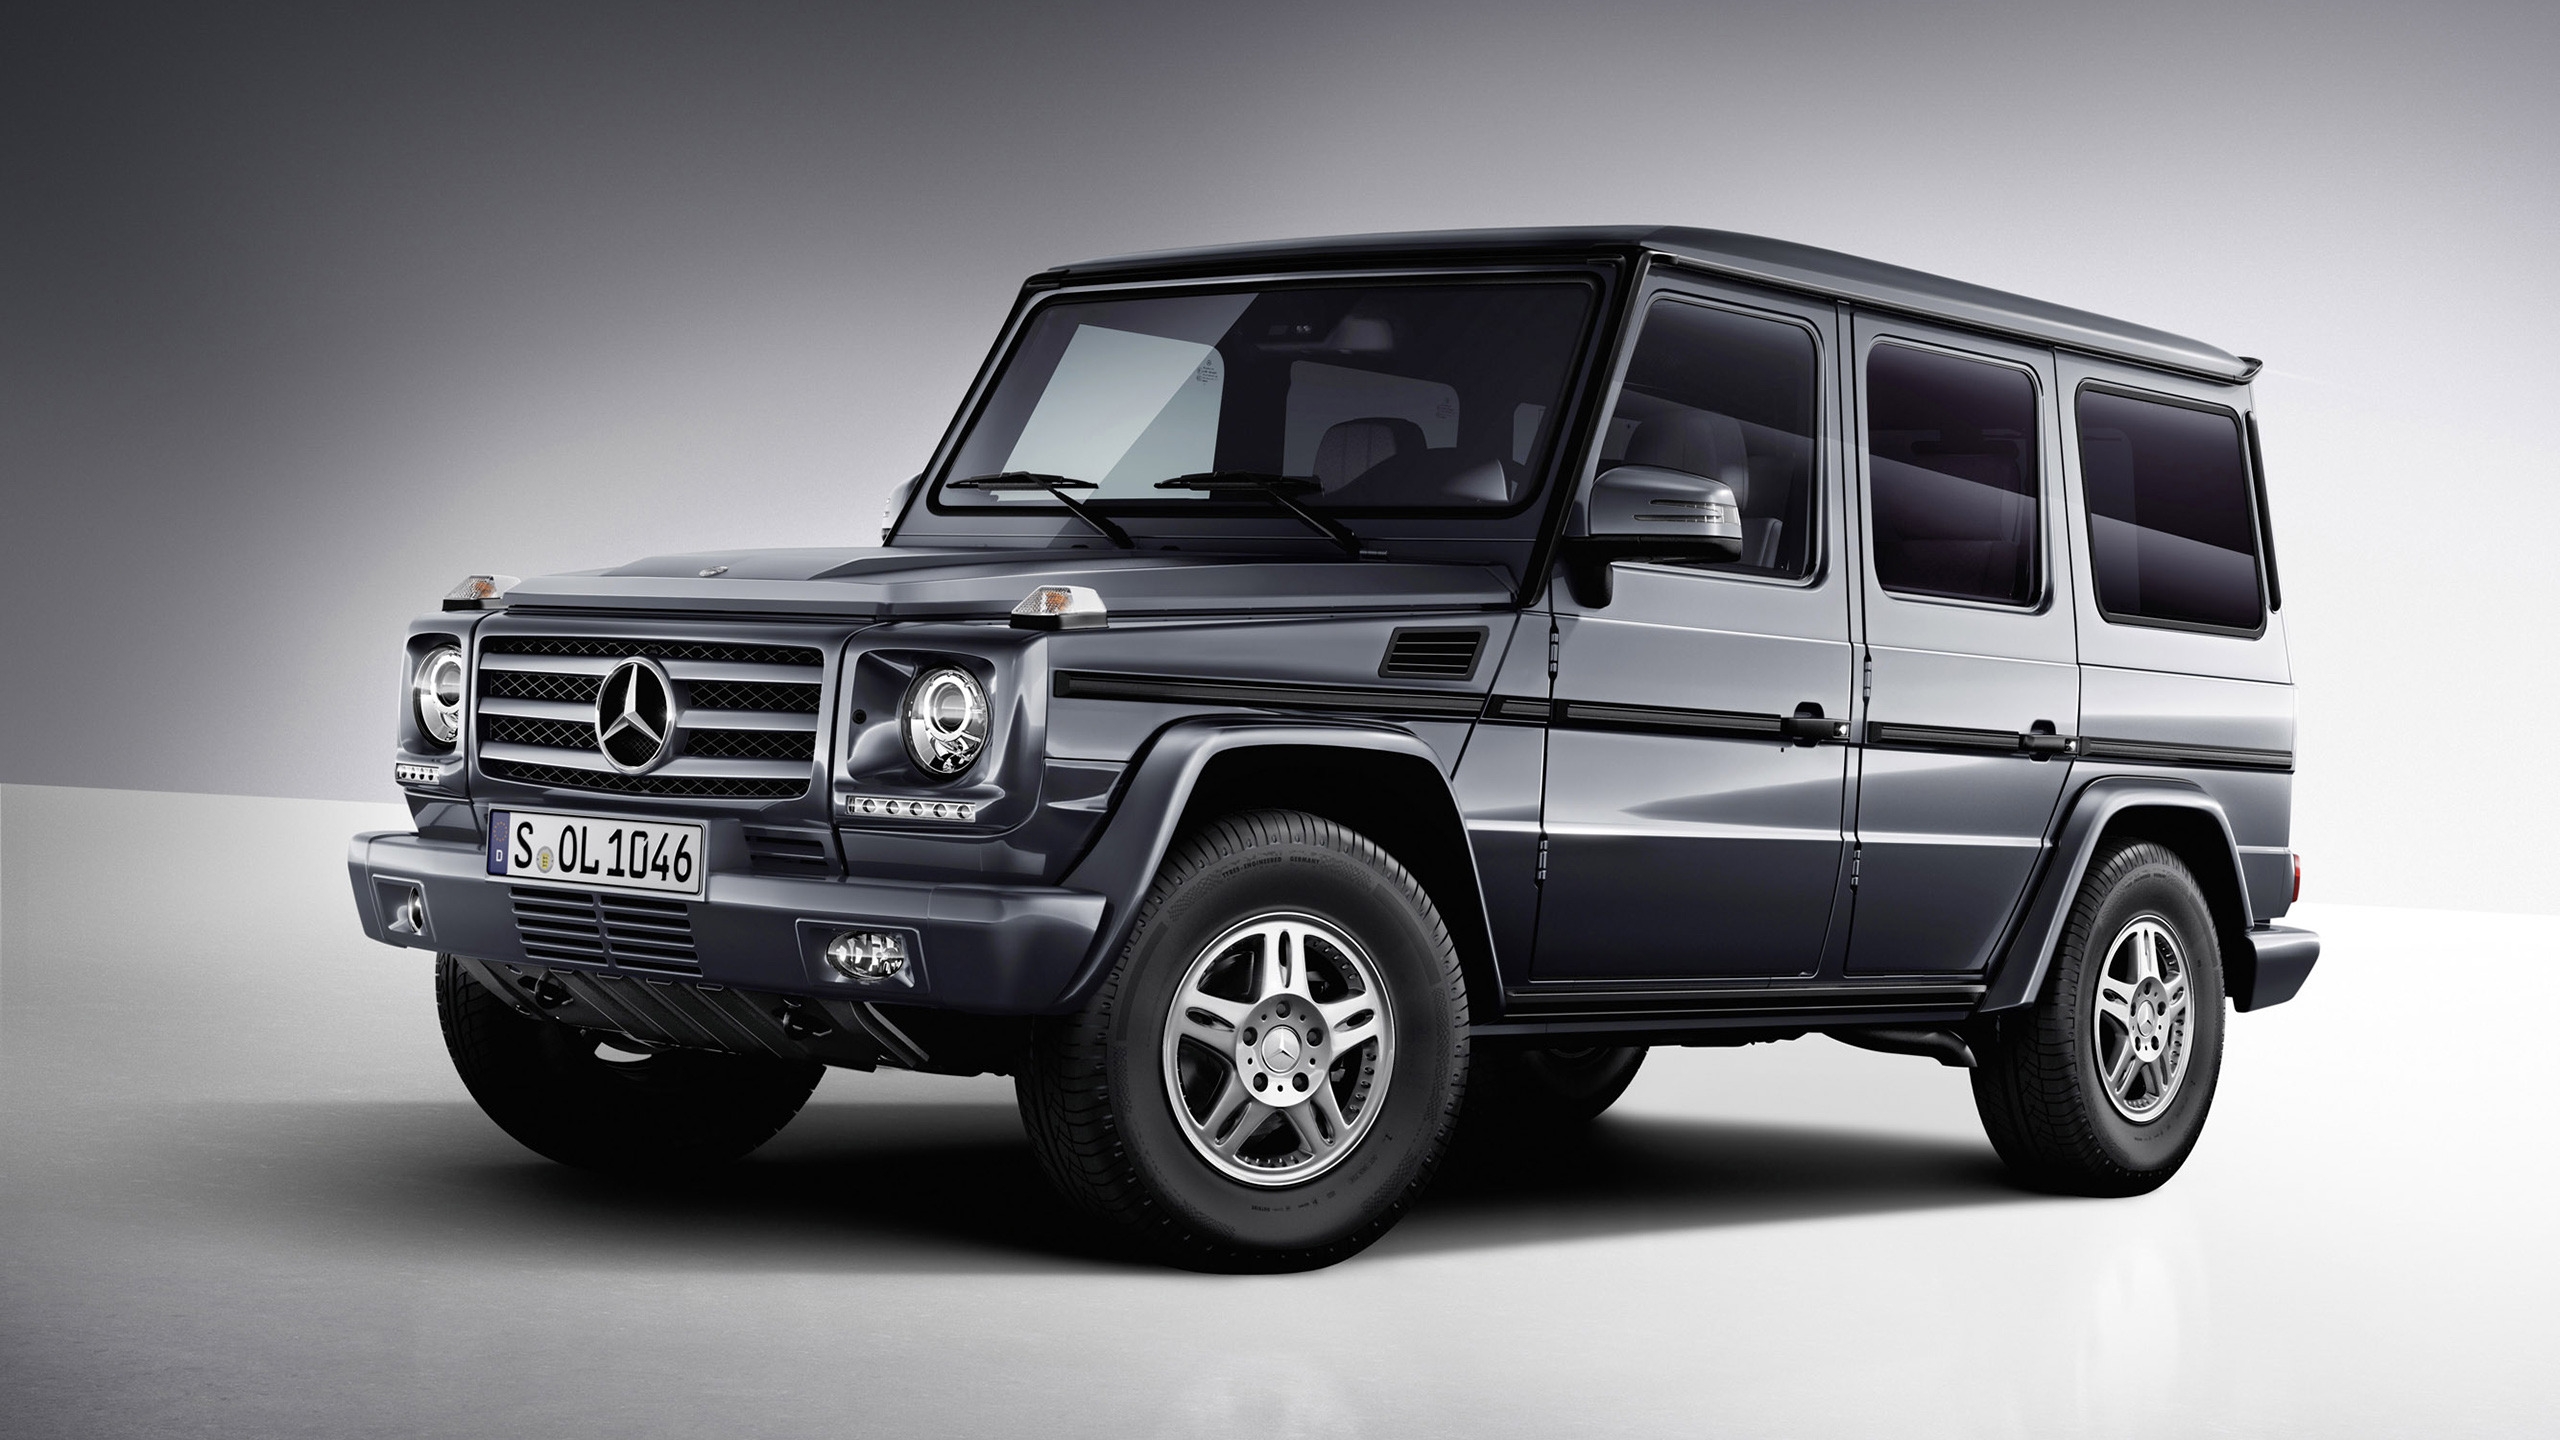 Mercedes Benz G Class Studio 2013 for 2560x1440 HDTV resolution